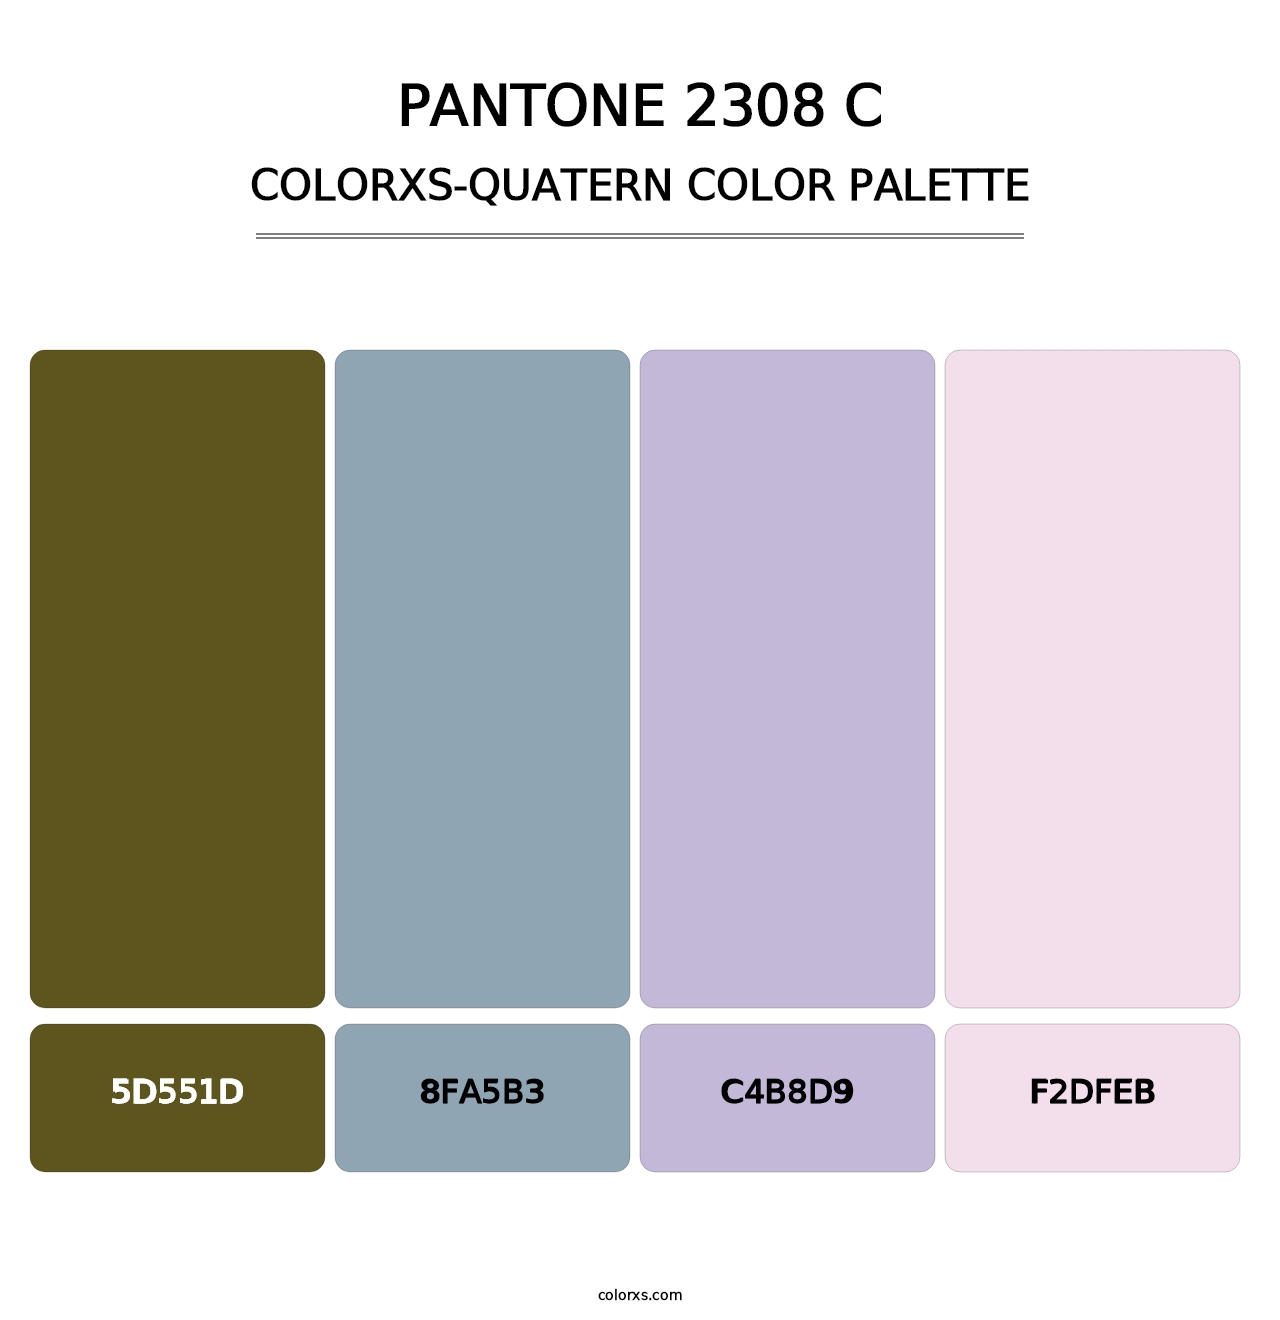 PANTONE 2308 C - Colorxs Quatern Palette